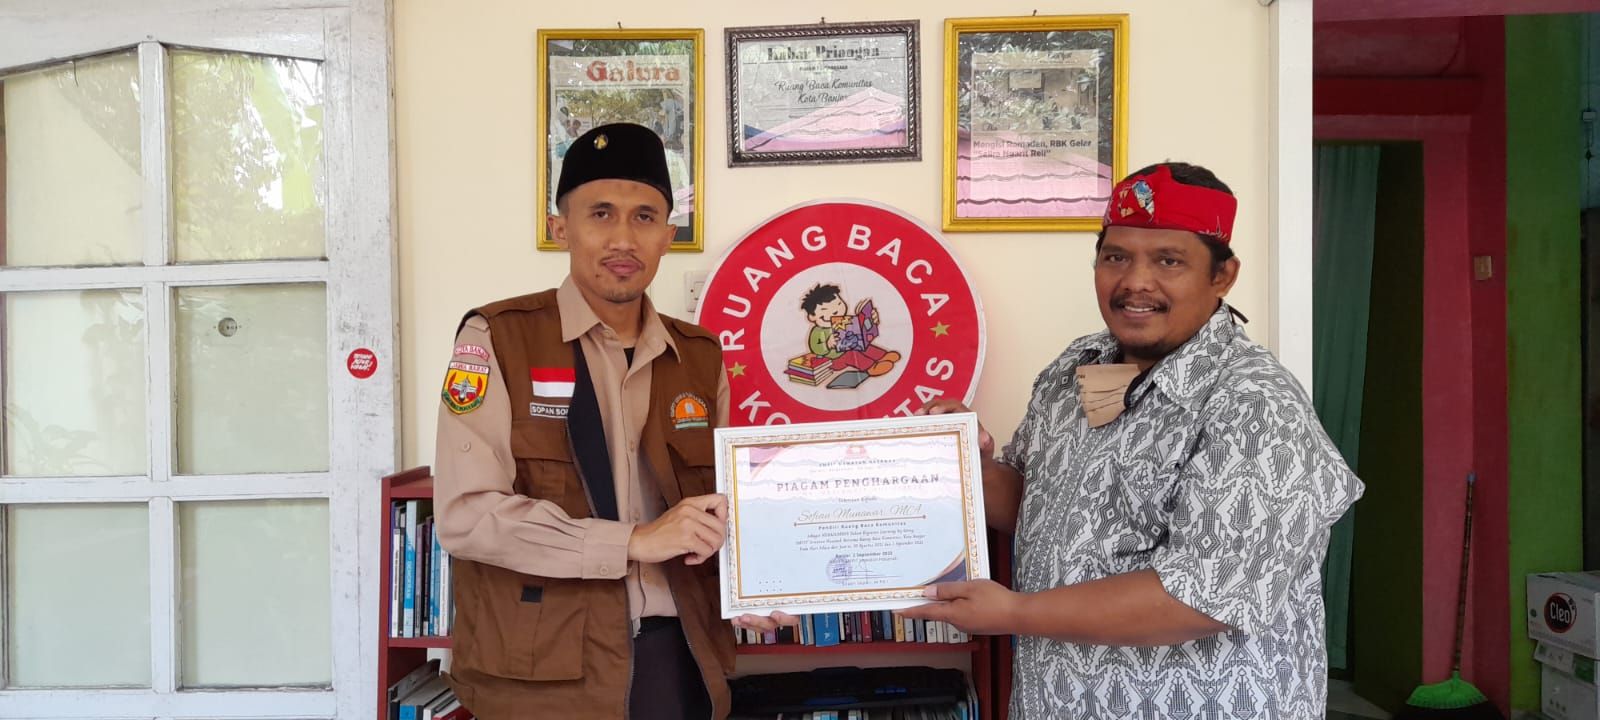 KEPALA SMPIT Uswatun Hasanah Banjar Sopan Sopari, MPdI, (kiri) bersama Pendiri RBK Banjar Sofian Munawar, MA, di Ruang Baca Komunitas (RBK) Kota Banjar, Jumat 2 September 2022.* 